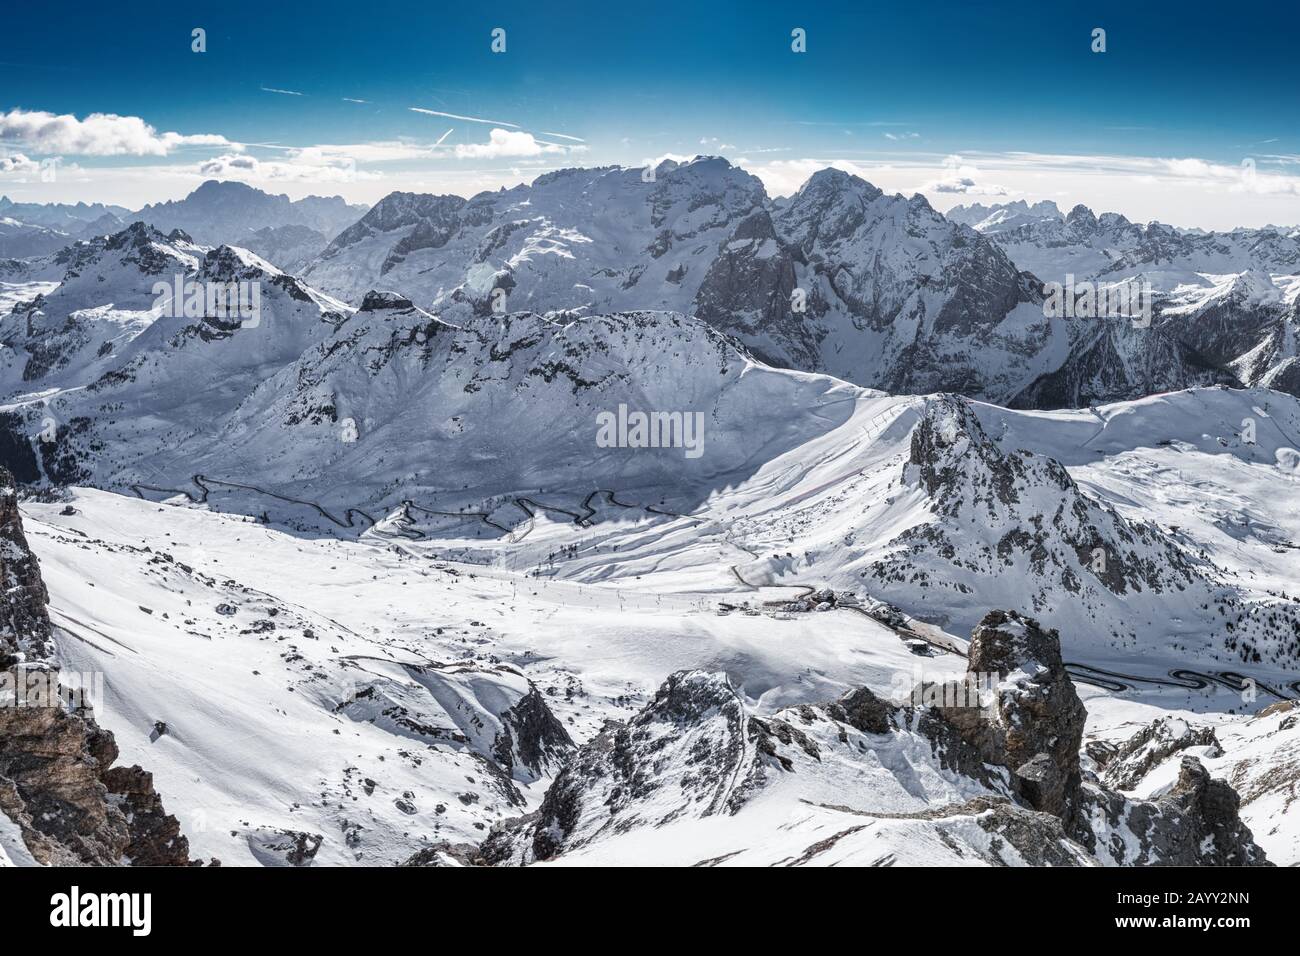 View to Passo pordoi mountain pass and Marmolada from Saas Pordoi, Italy, Europe. Stock Photo